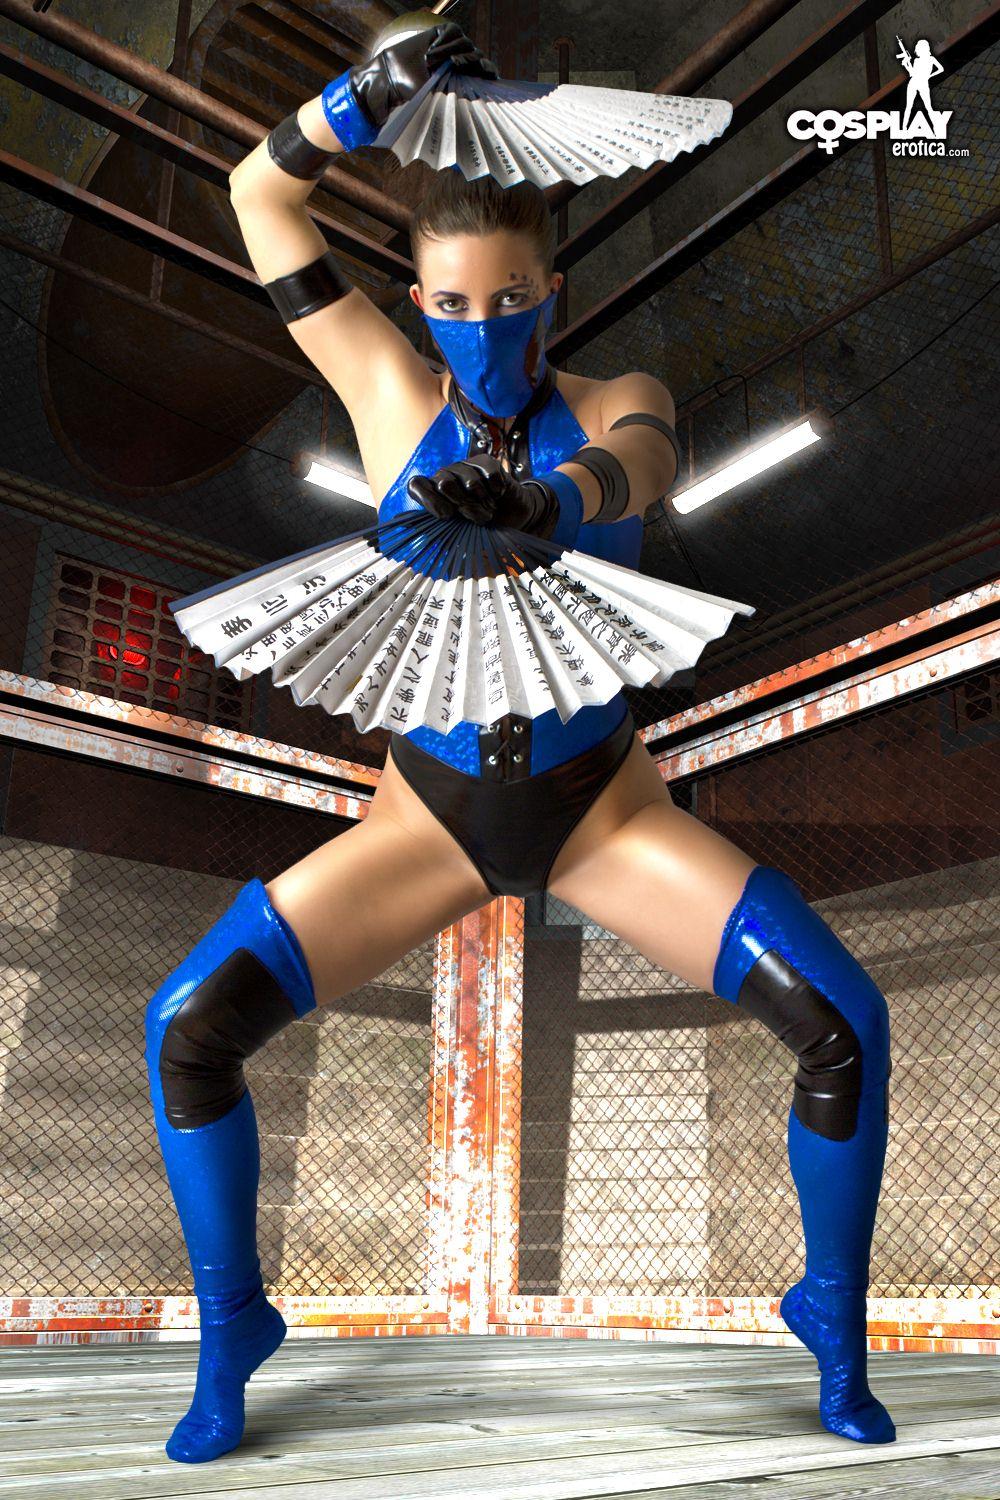 Immagini di gogo cosplayer sexy vestito come Kitana da Mortal Kombat
 #54561257